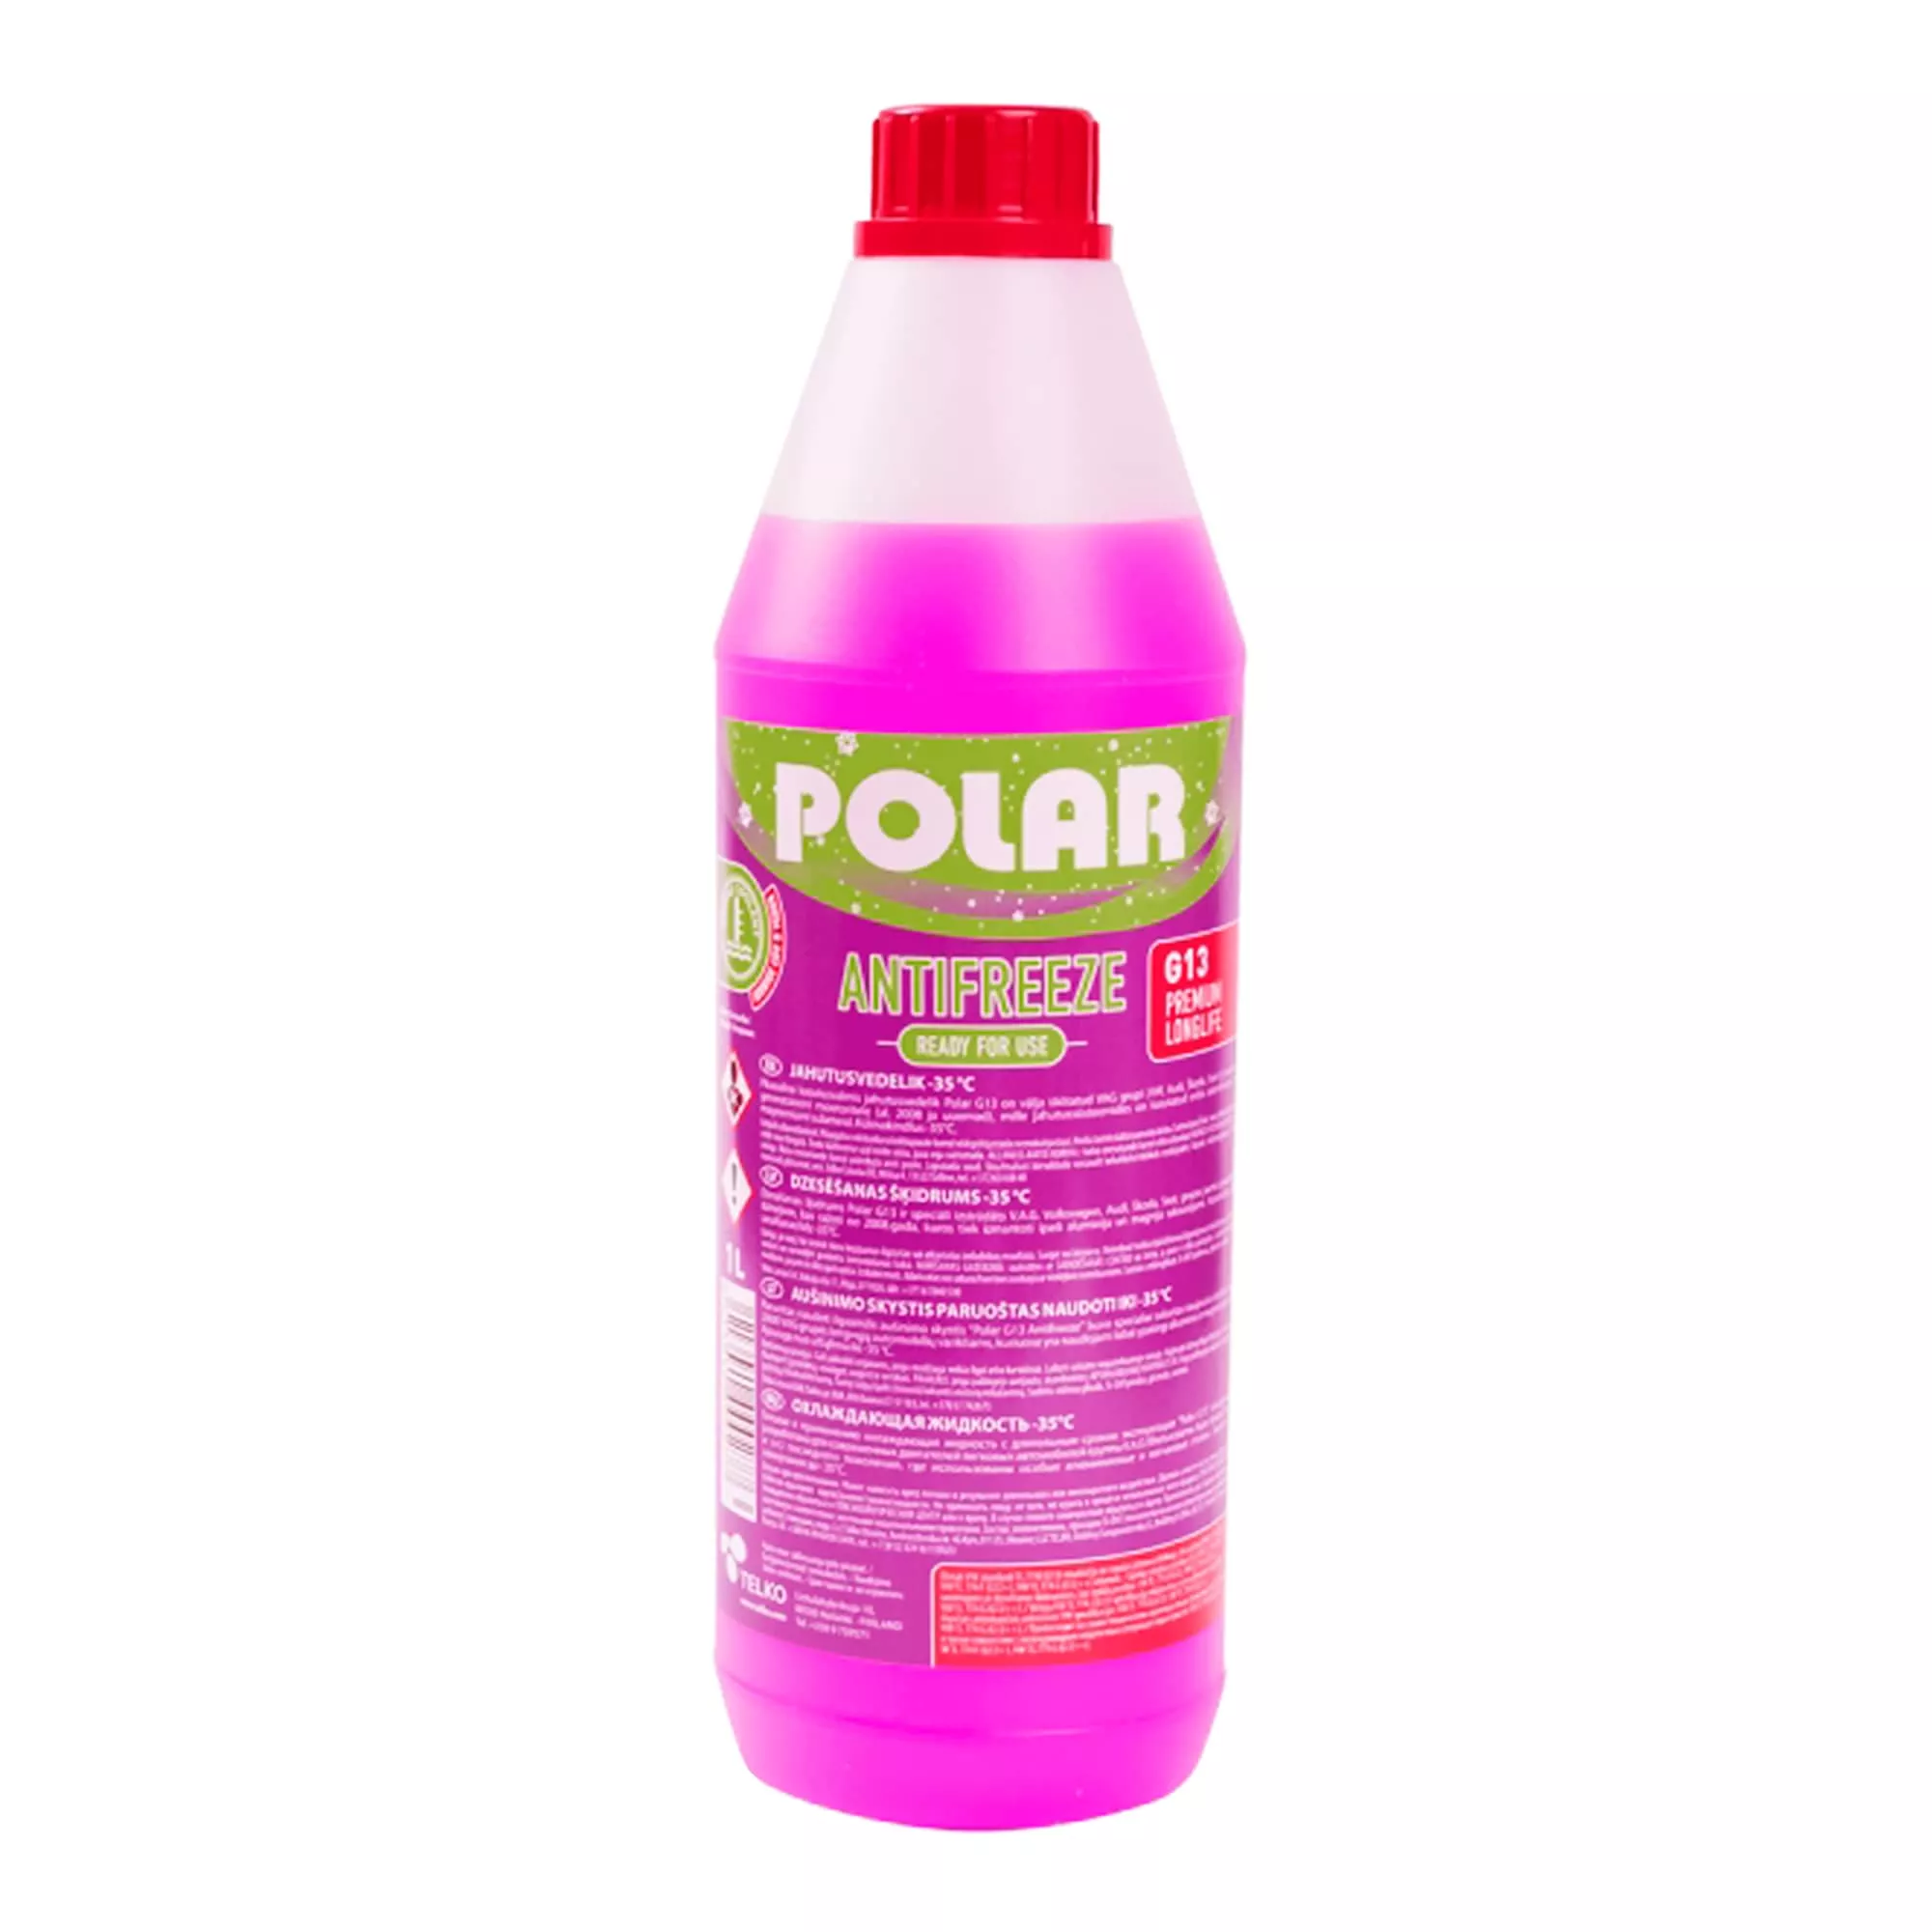 Антифриз Polar Premium LL G13 -35°C фиолетовый 1л (000277)